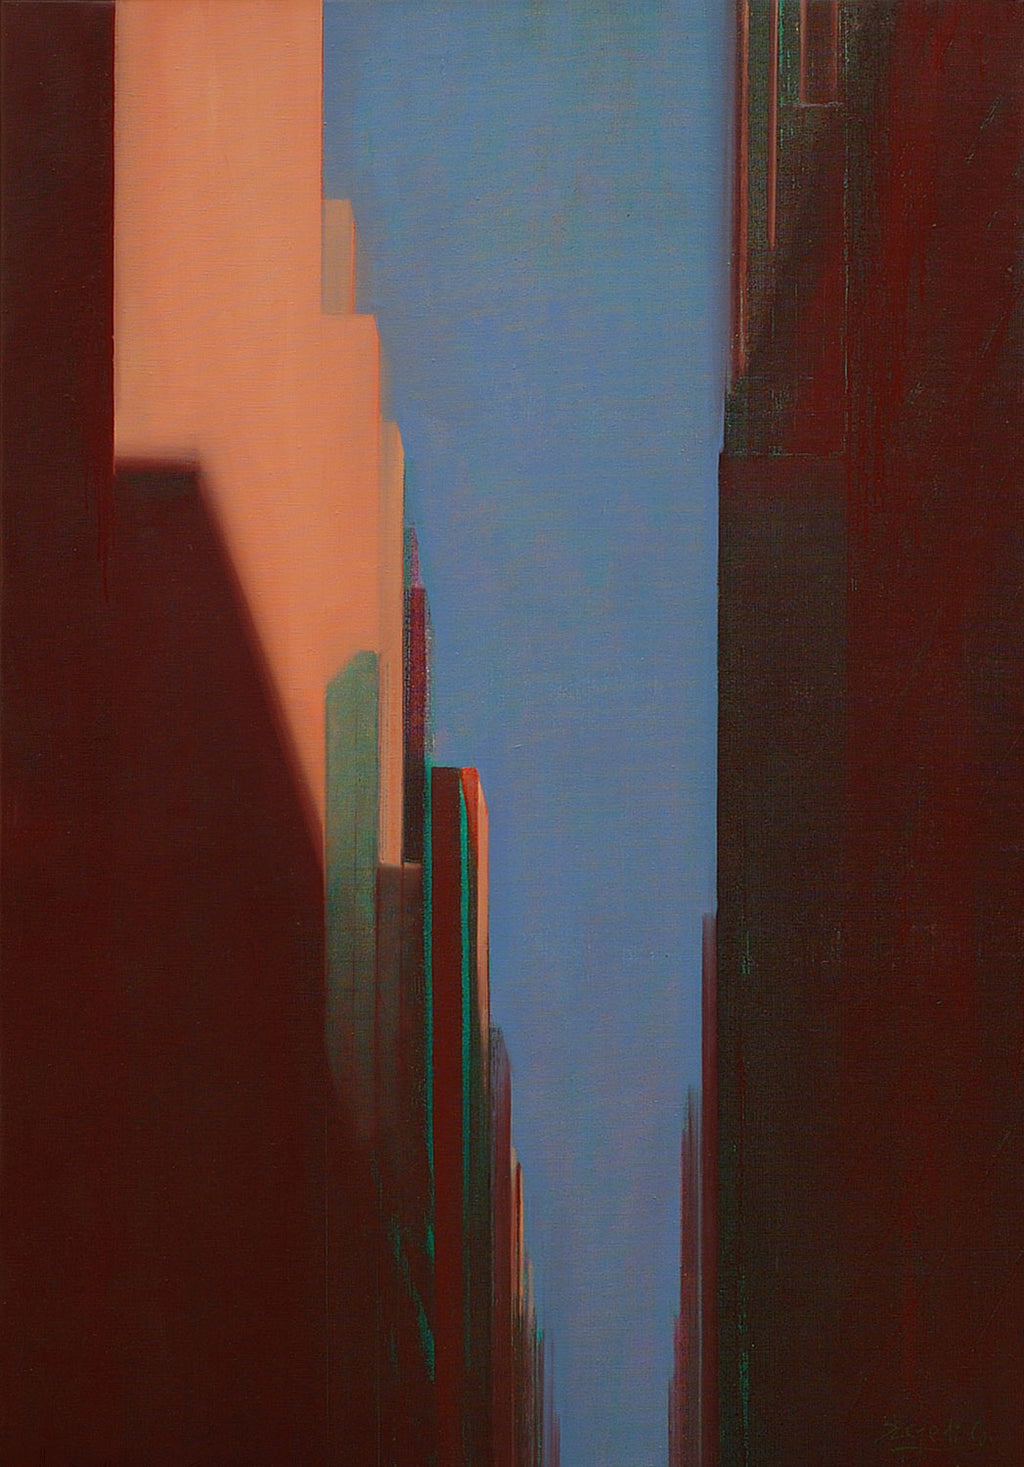 MANHATTAN SUNSET (BROWN-BLUE-BEIGE) - BY CSABA SZEGEDI